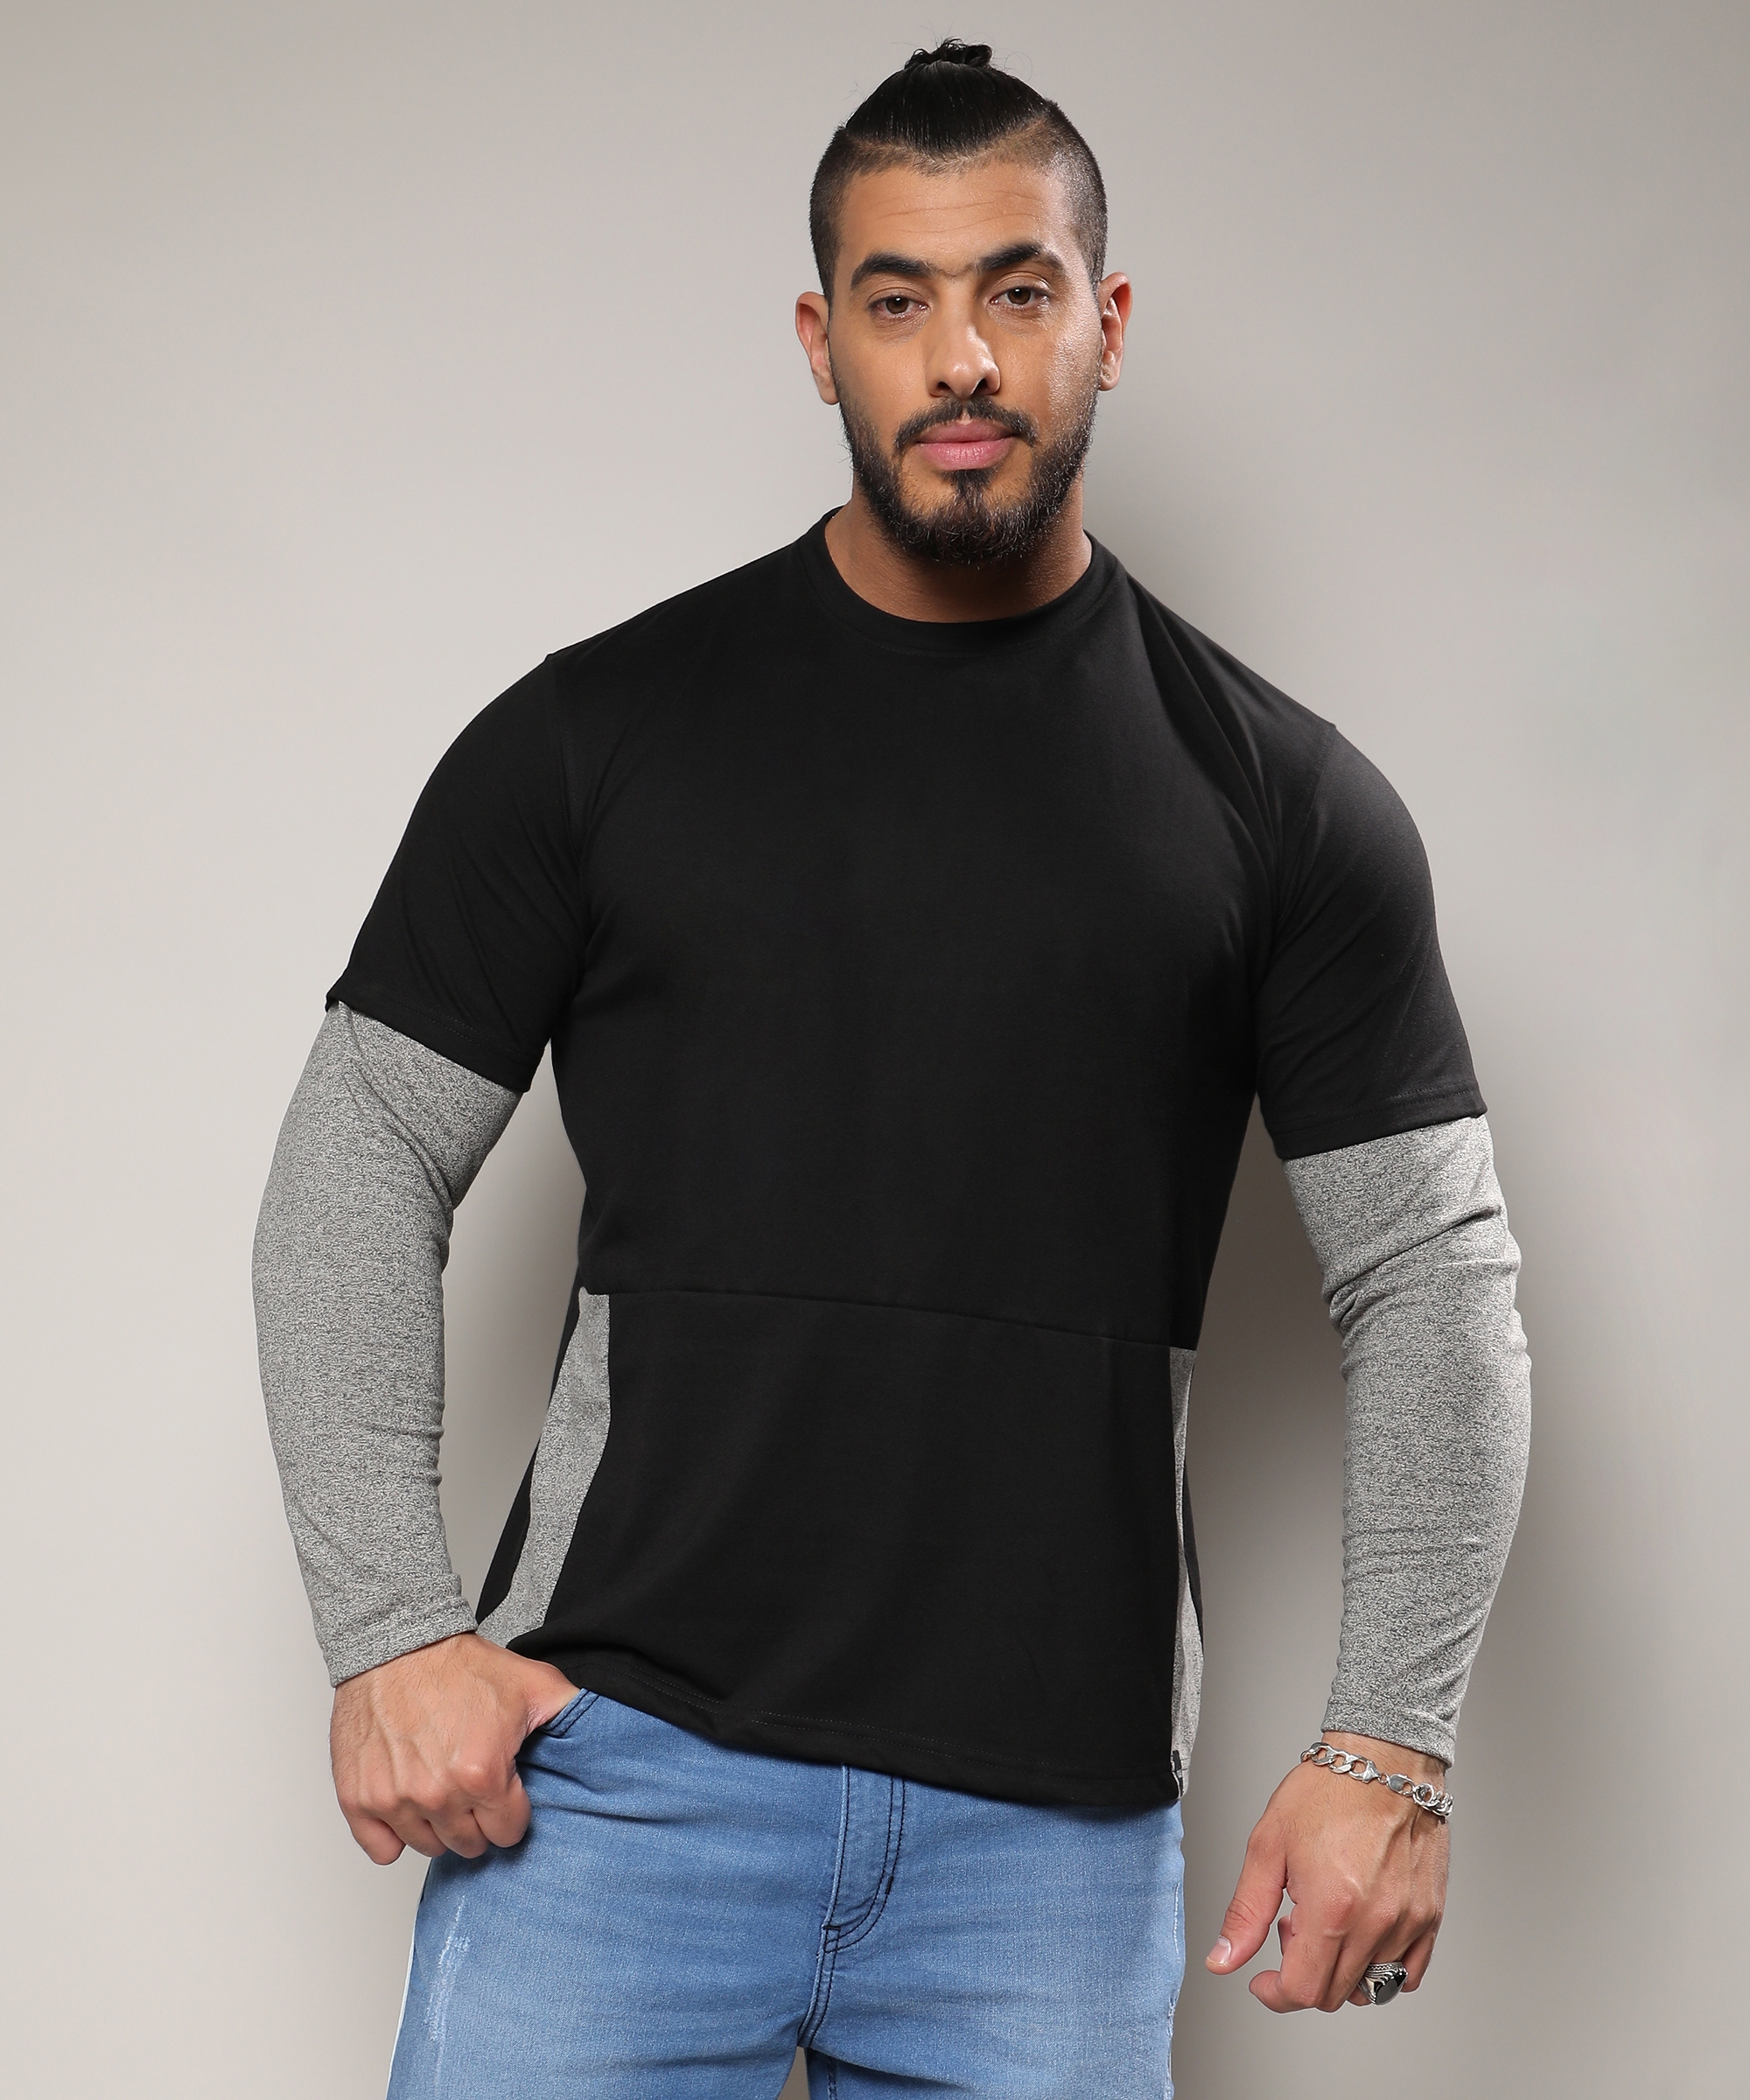 Instafab Plus | Men's Carbon Black & Moon Grey Contrast Skater T-Shirt